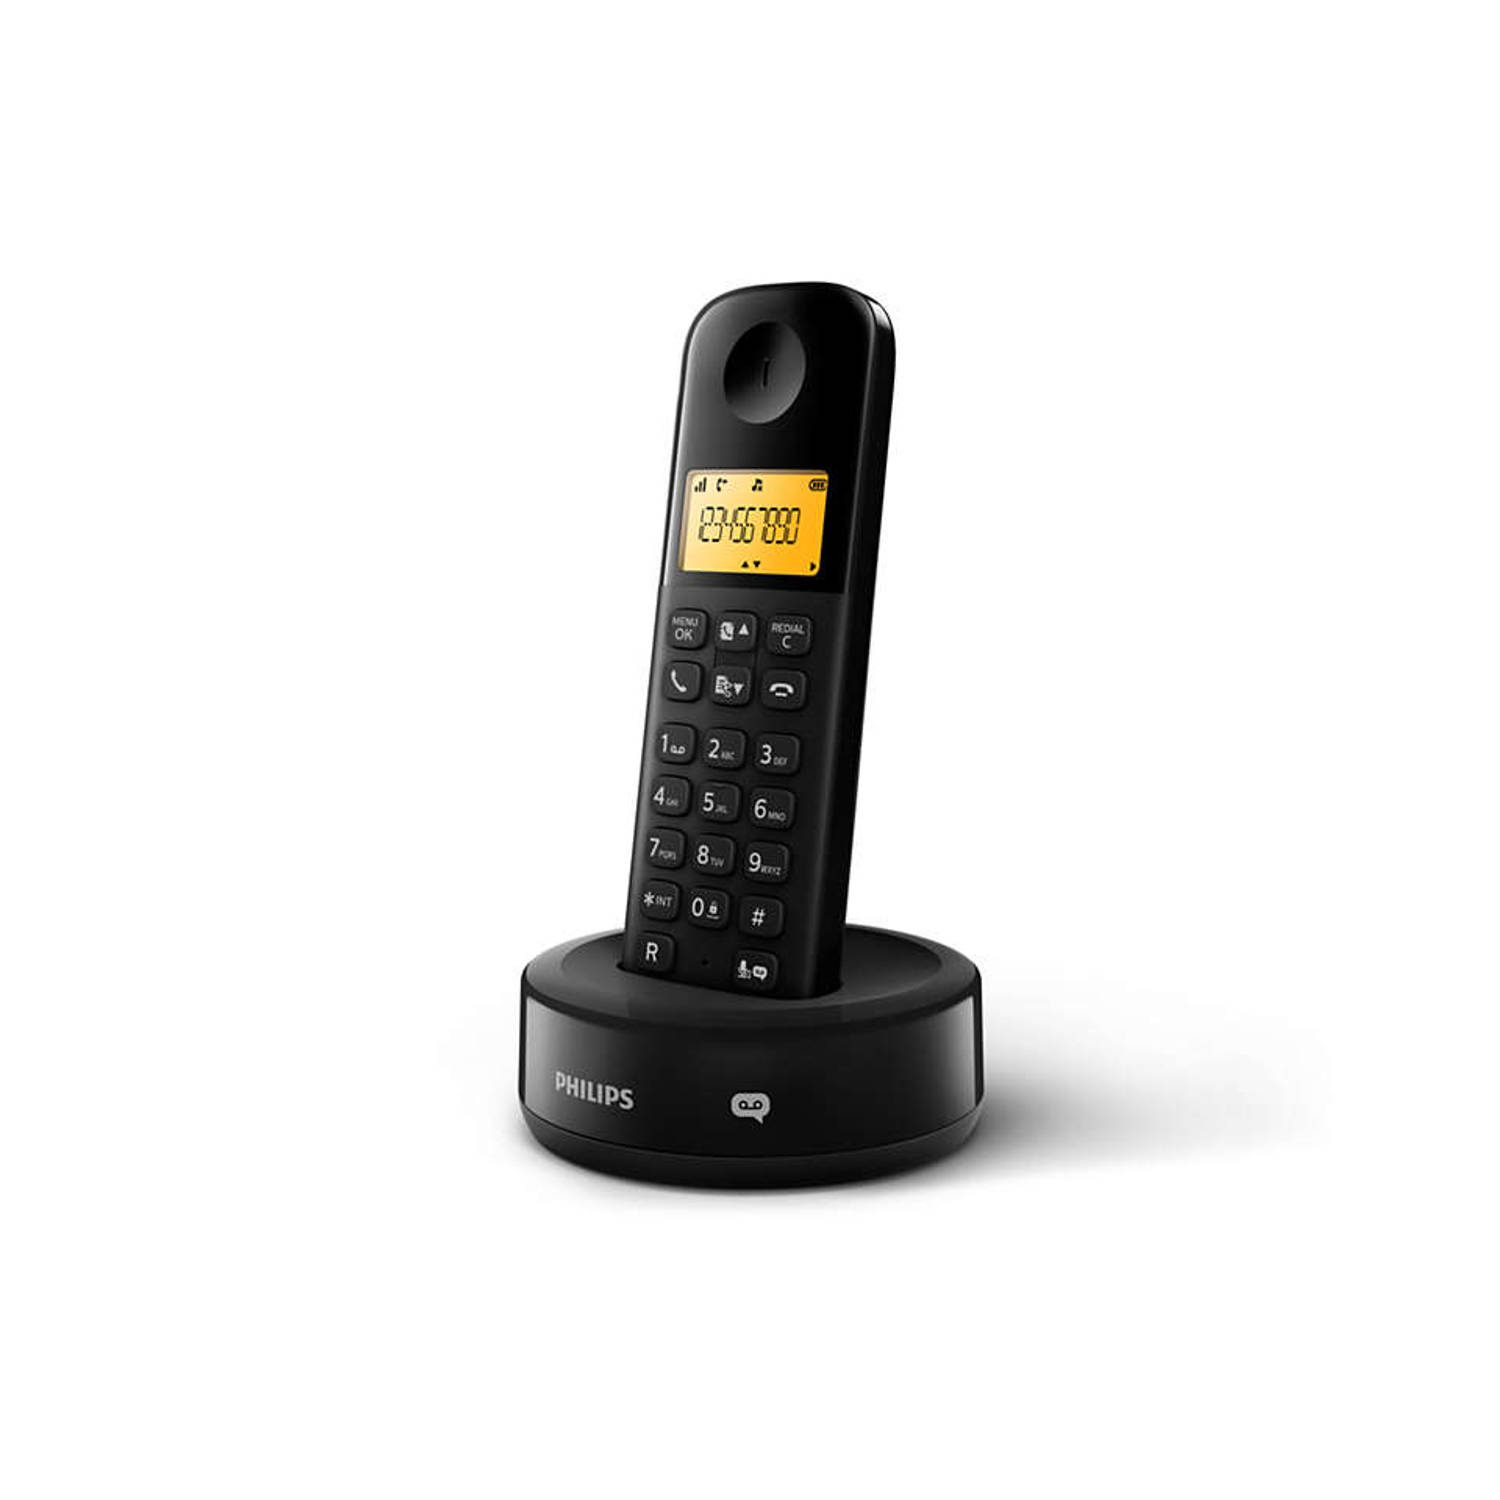 Philips Draadloze Telefoon D1651b-01 Dect Huistelefoon Vaste Lijn Nummerherkenning Storingsvrij Bere